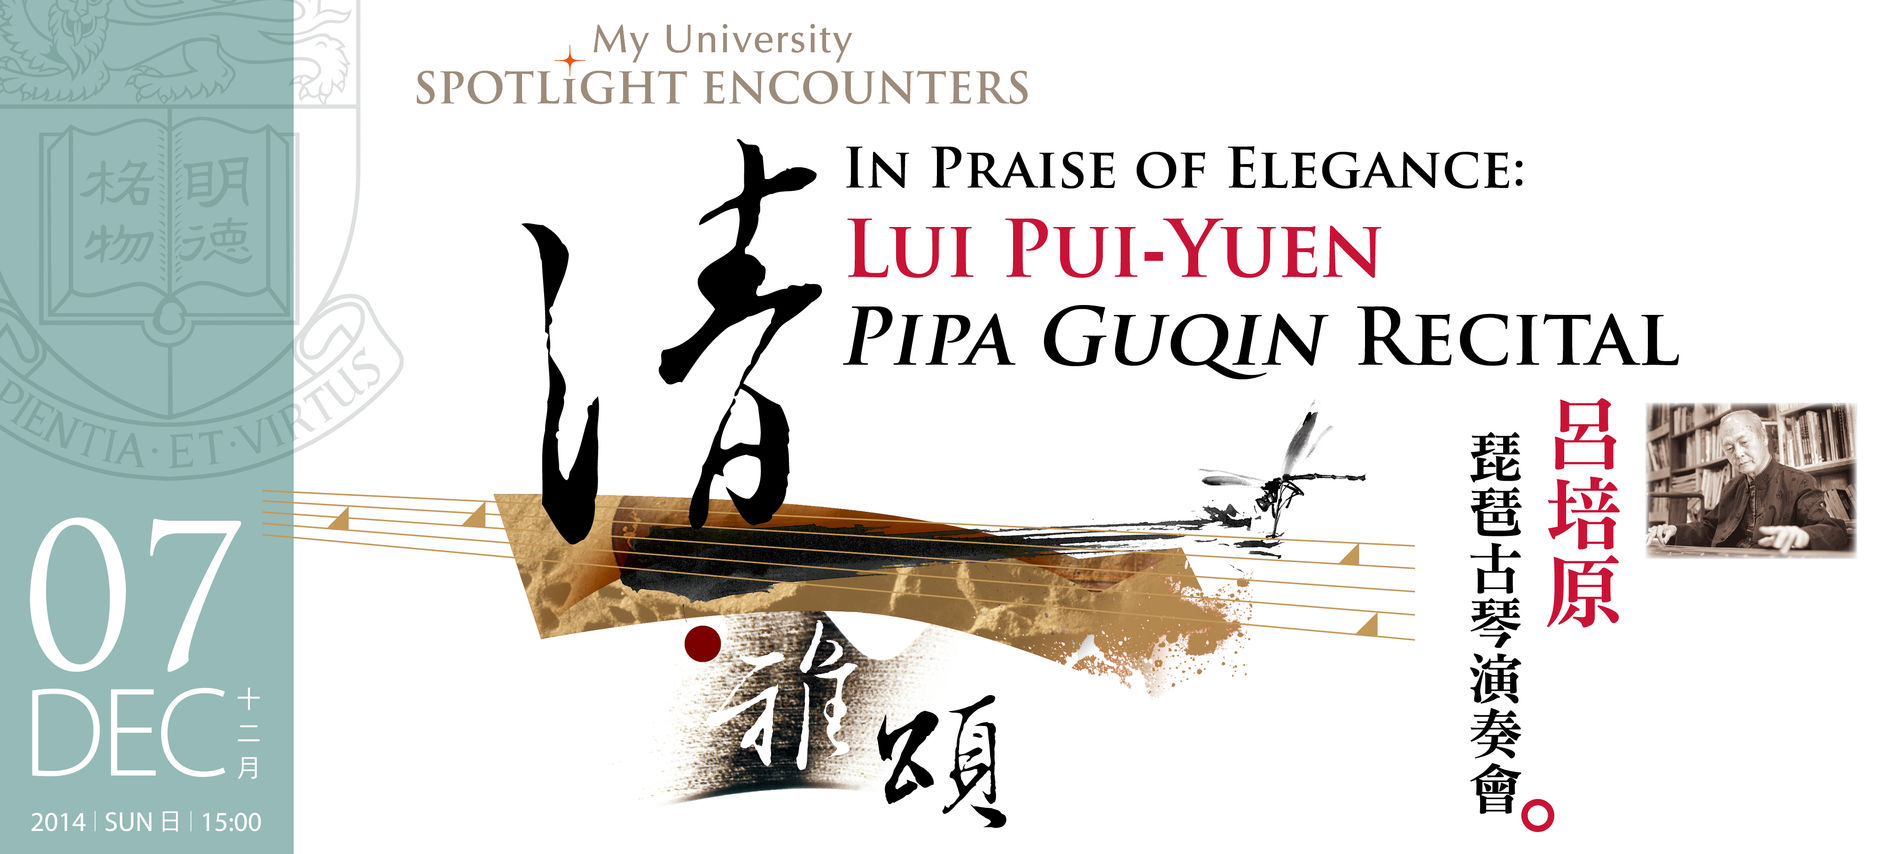 In Praise of Elegance:  Lui Pui-Yuen Pipa Guqin Recital